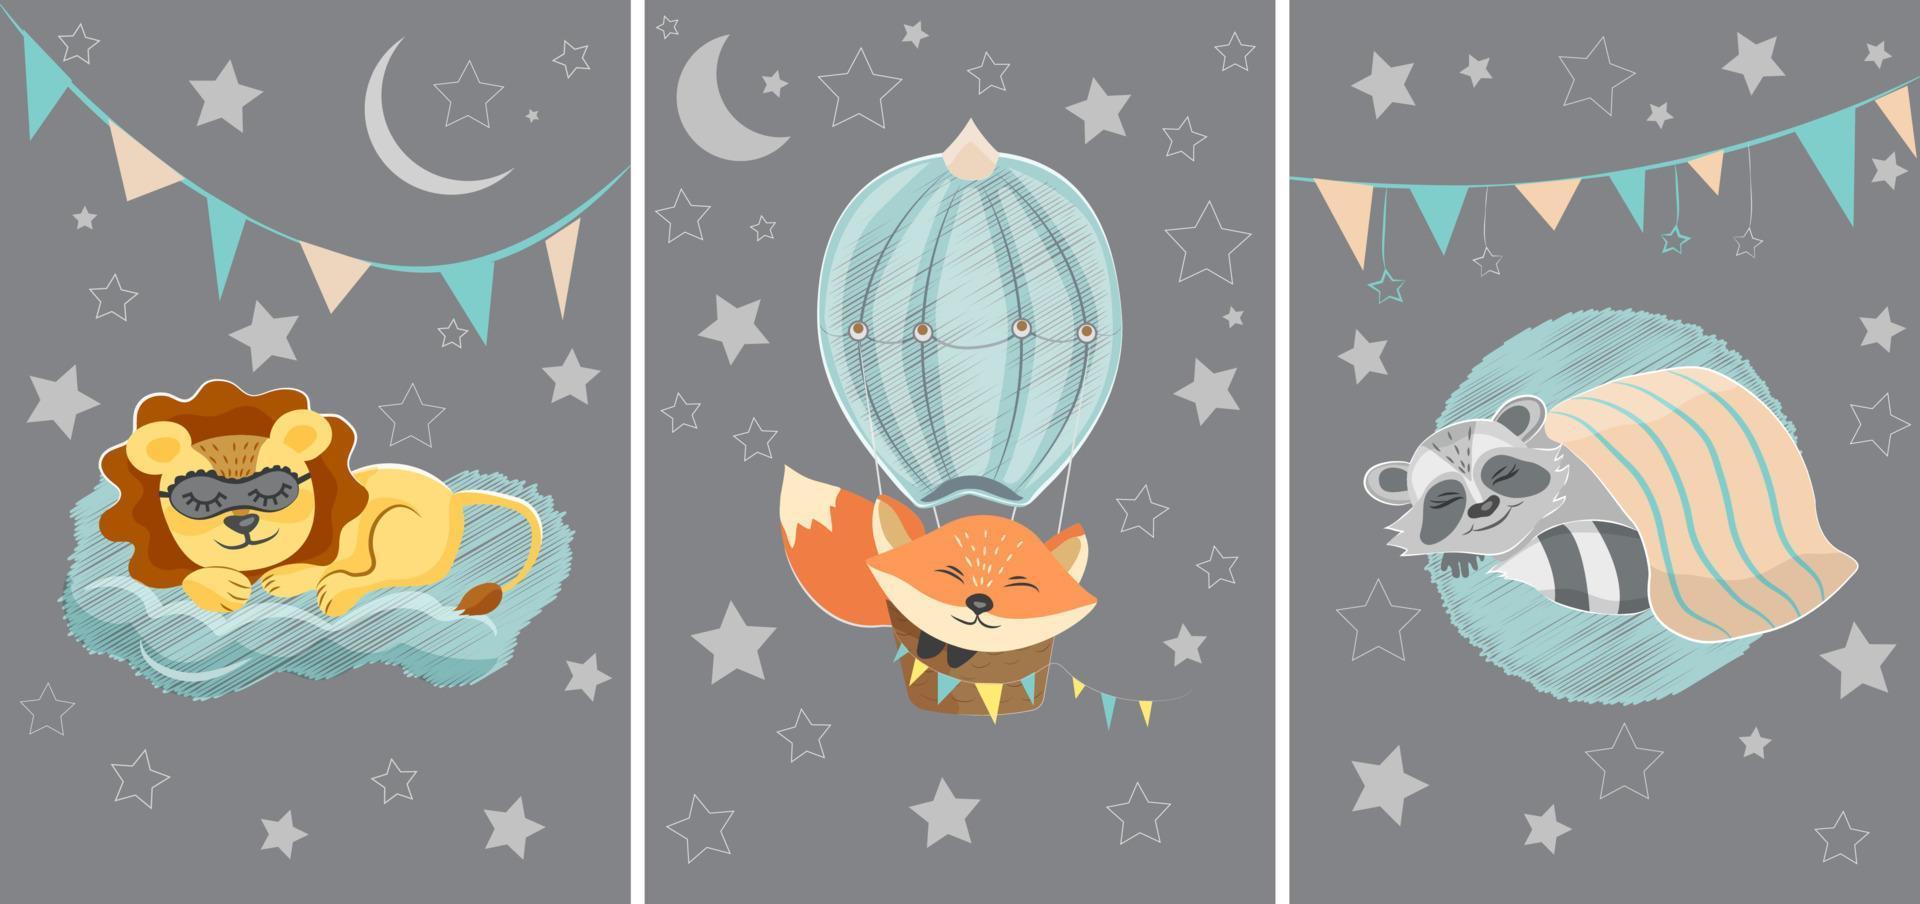 ein satz von drei illustrationen mit niedlichen schlafenden tieren. Löwe, Fuchs und Waschbär im Cartoon-Stil zur Dekoration von Kinderzimmern oder anderen Kinderräumen. vektor